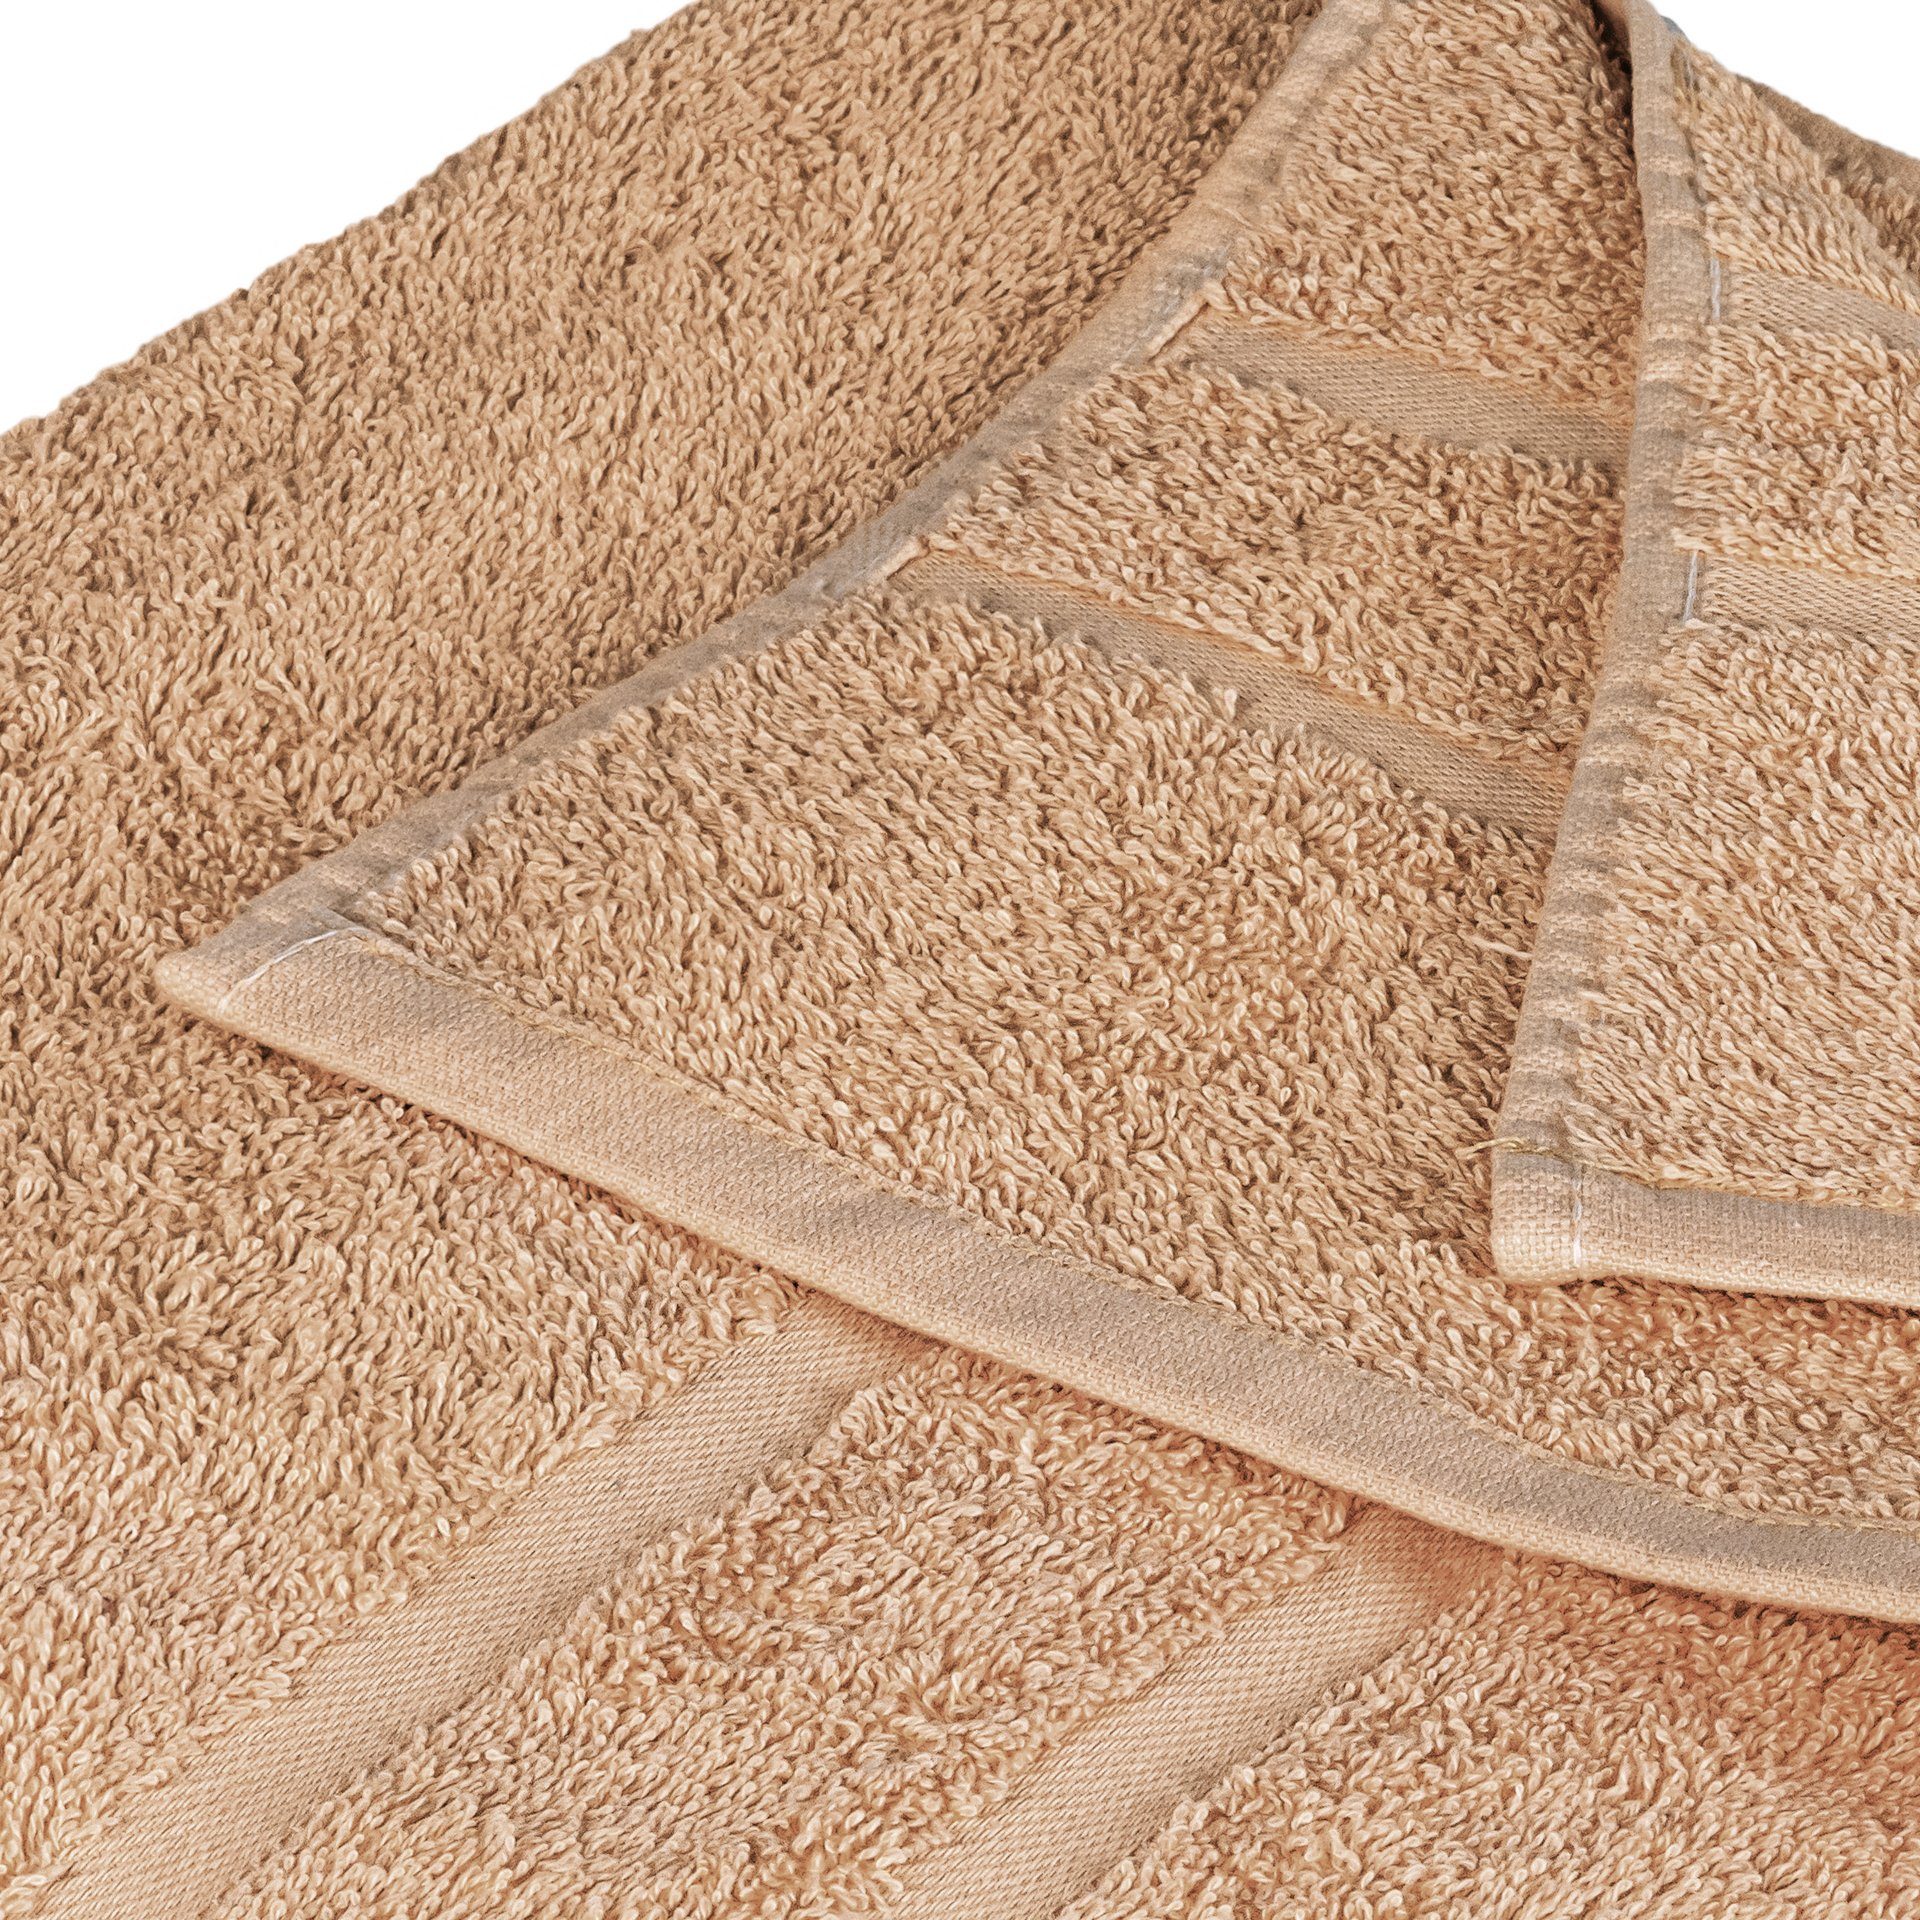 StickandShine Handtuch Handtücher Hellbraun 500 GSM Wahl zur Baumwolle Duschtücher Saunatücher 100% Badetücher Gästehandtücher in